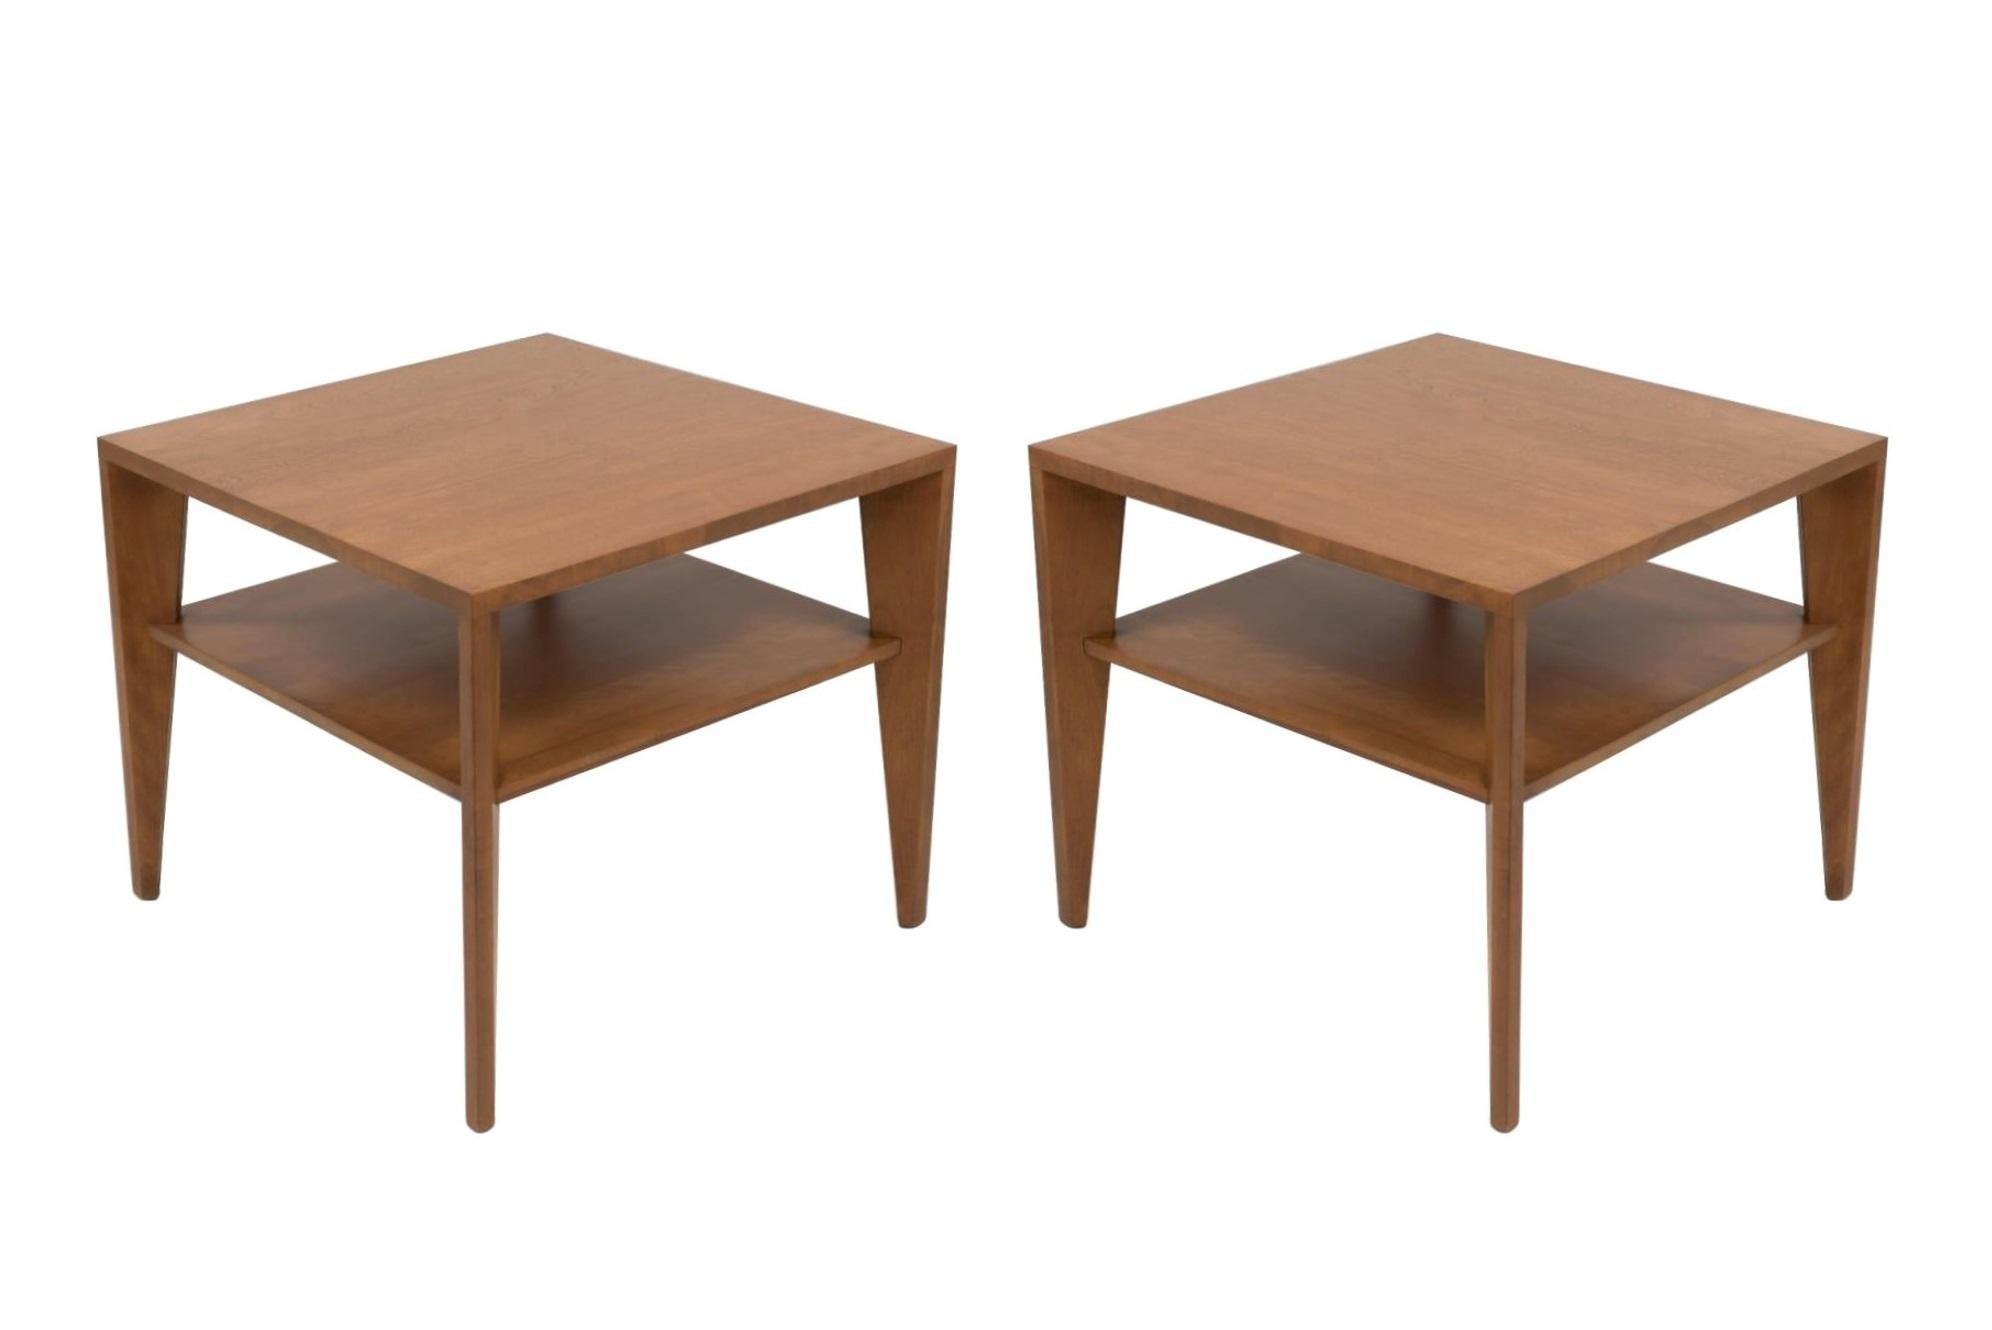 Cette paire élégante de tables d'appoint ou de tables basses de style Mid Century Modern a été conçue par Russel Wright. Fait partie de la très populaire série 